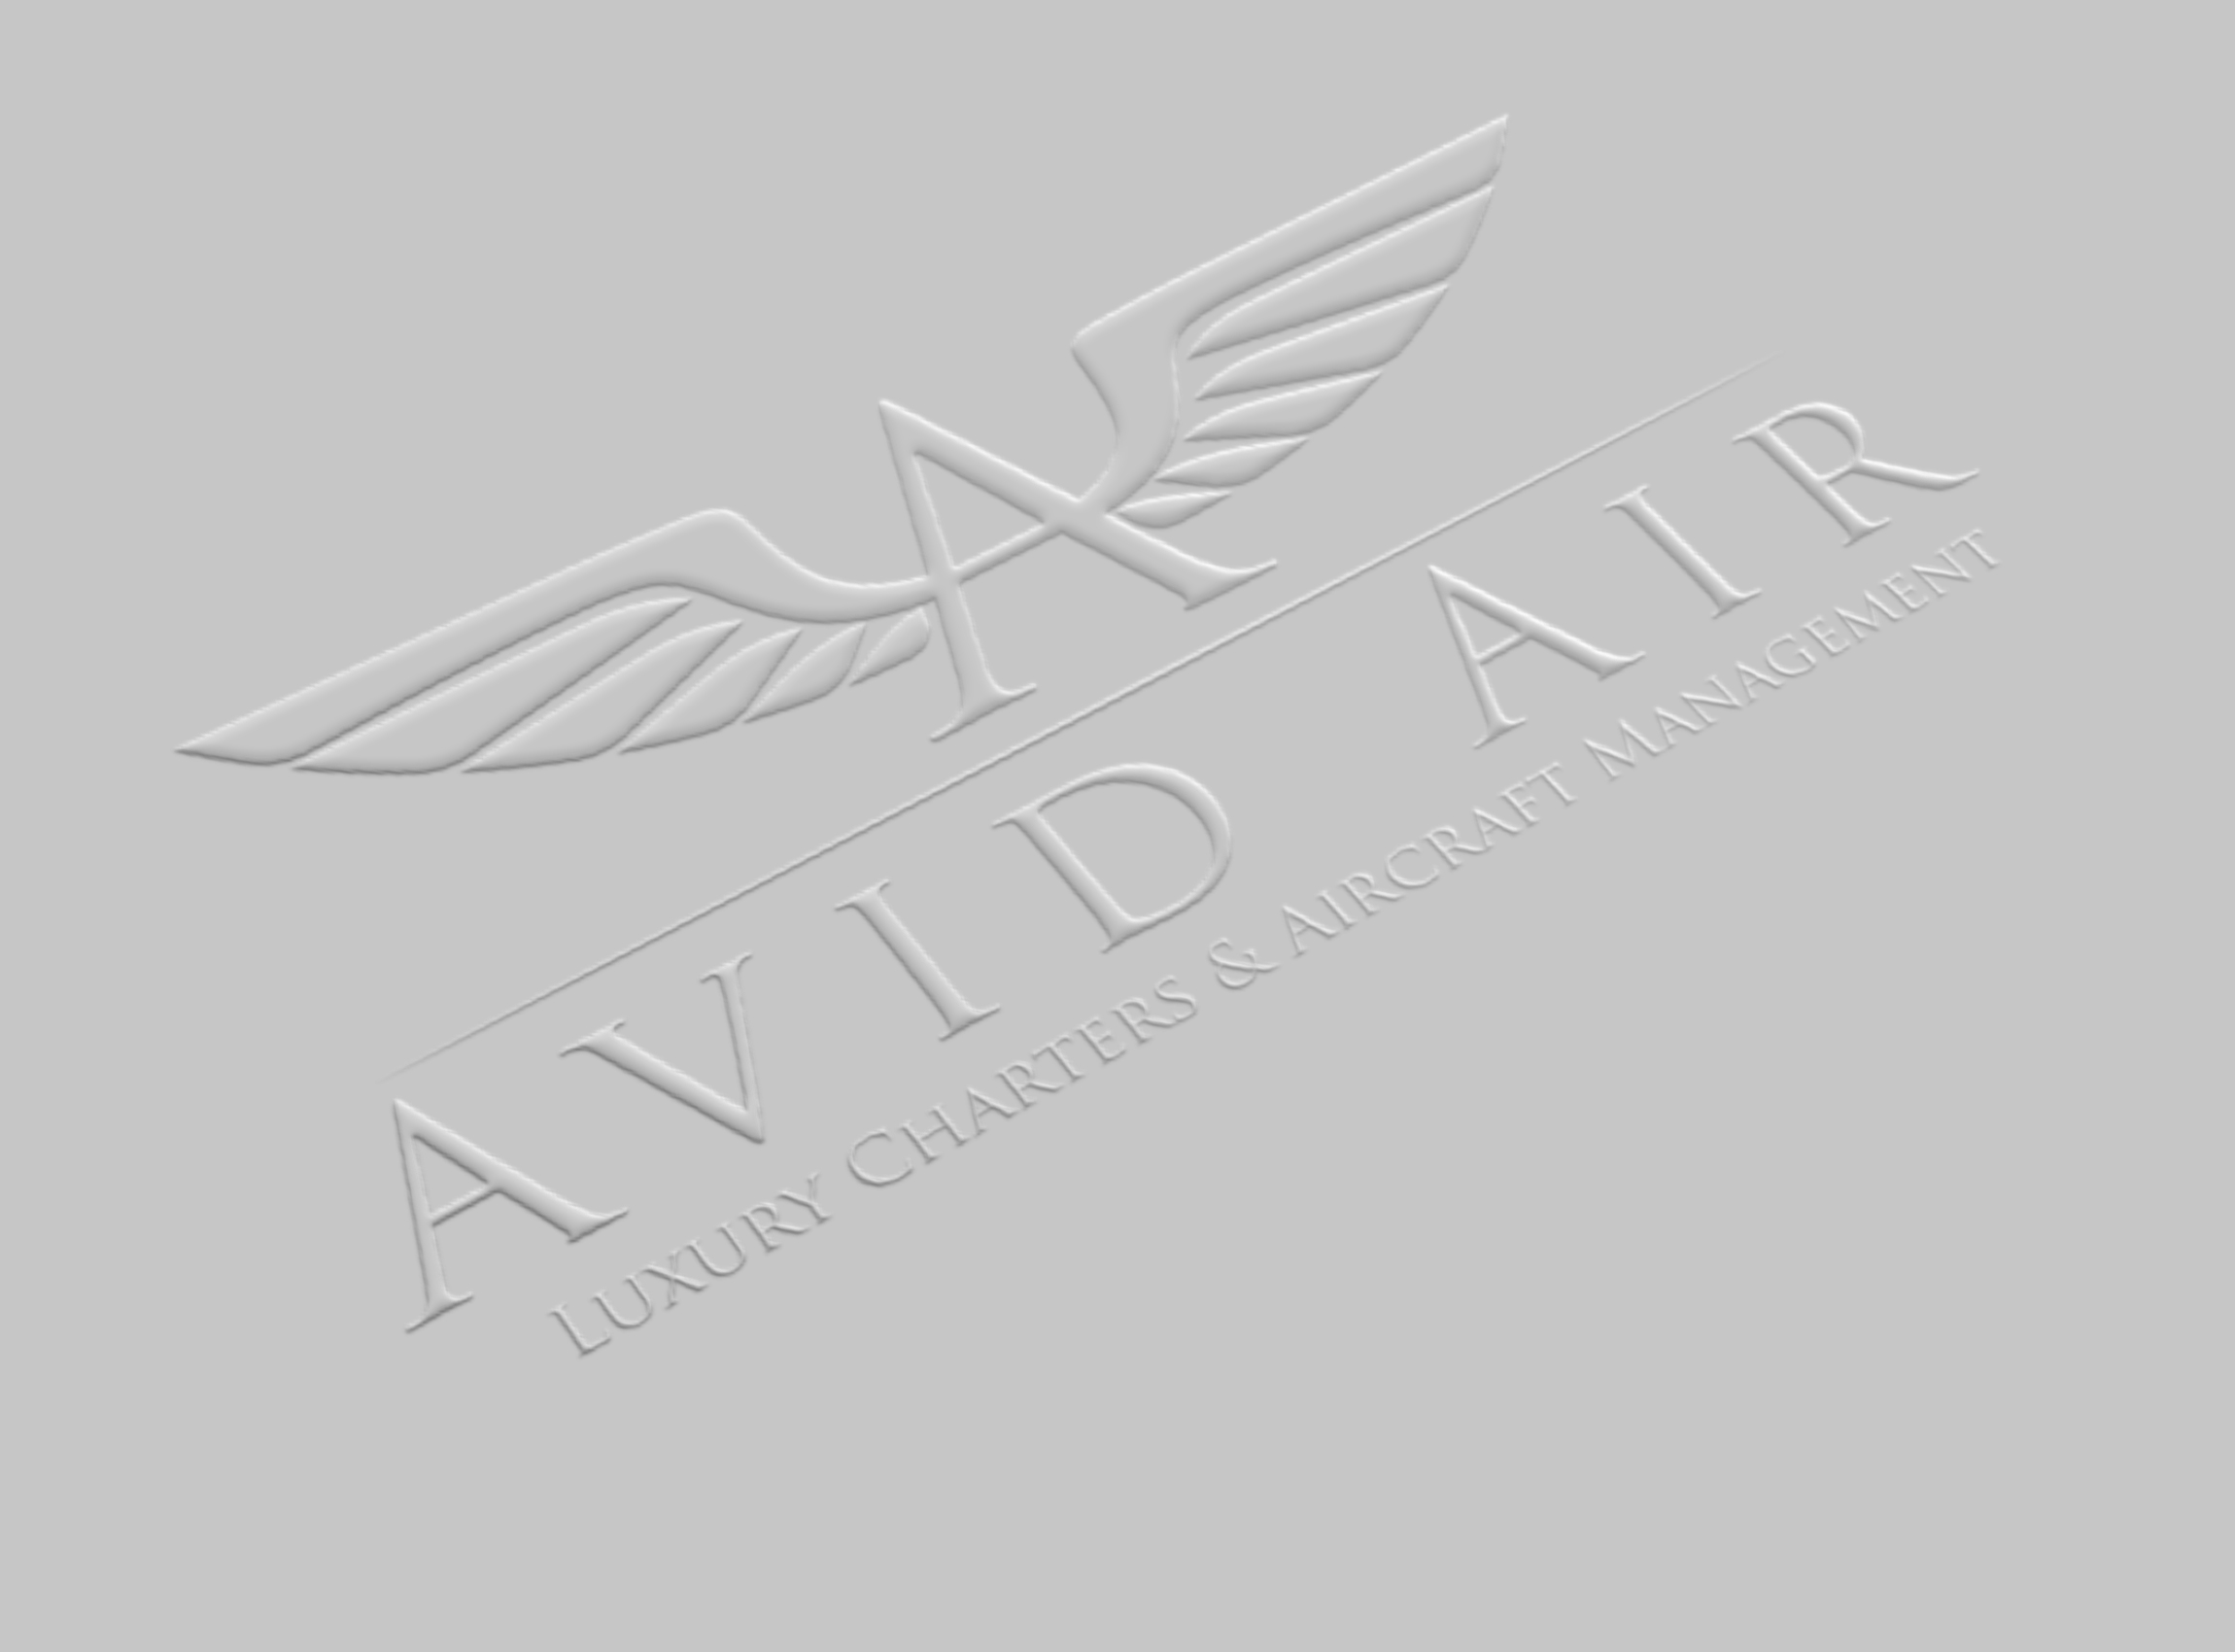 Avid Air Charter Company Logo / Identity